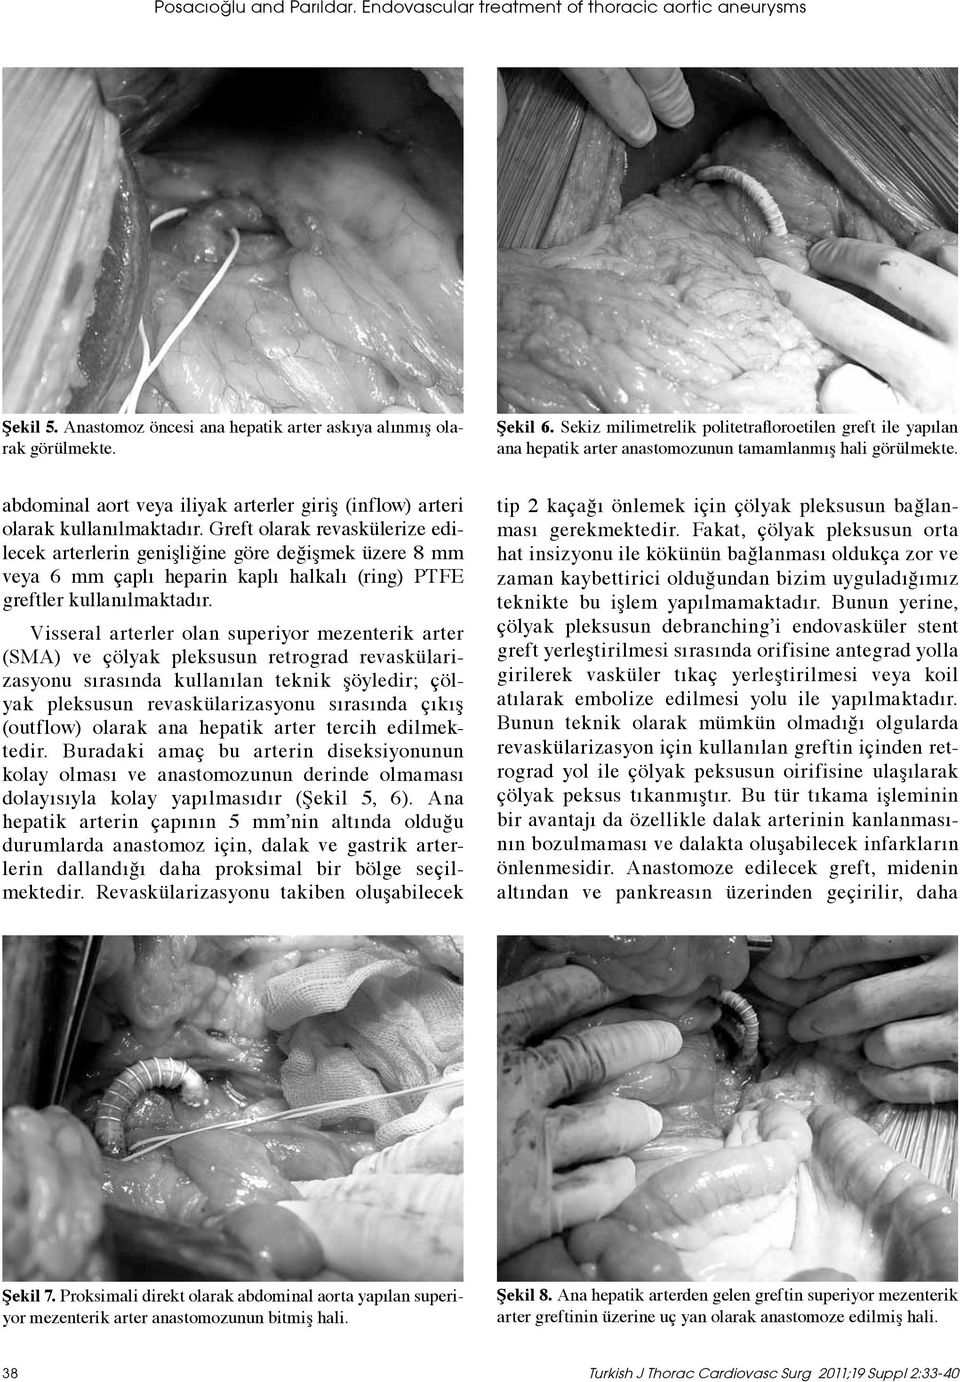 abdominal aort veya iliyak arterler giriş (inflow) arteri olarak kullanılmaktadır.